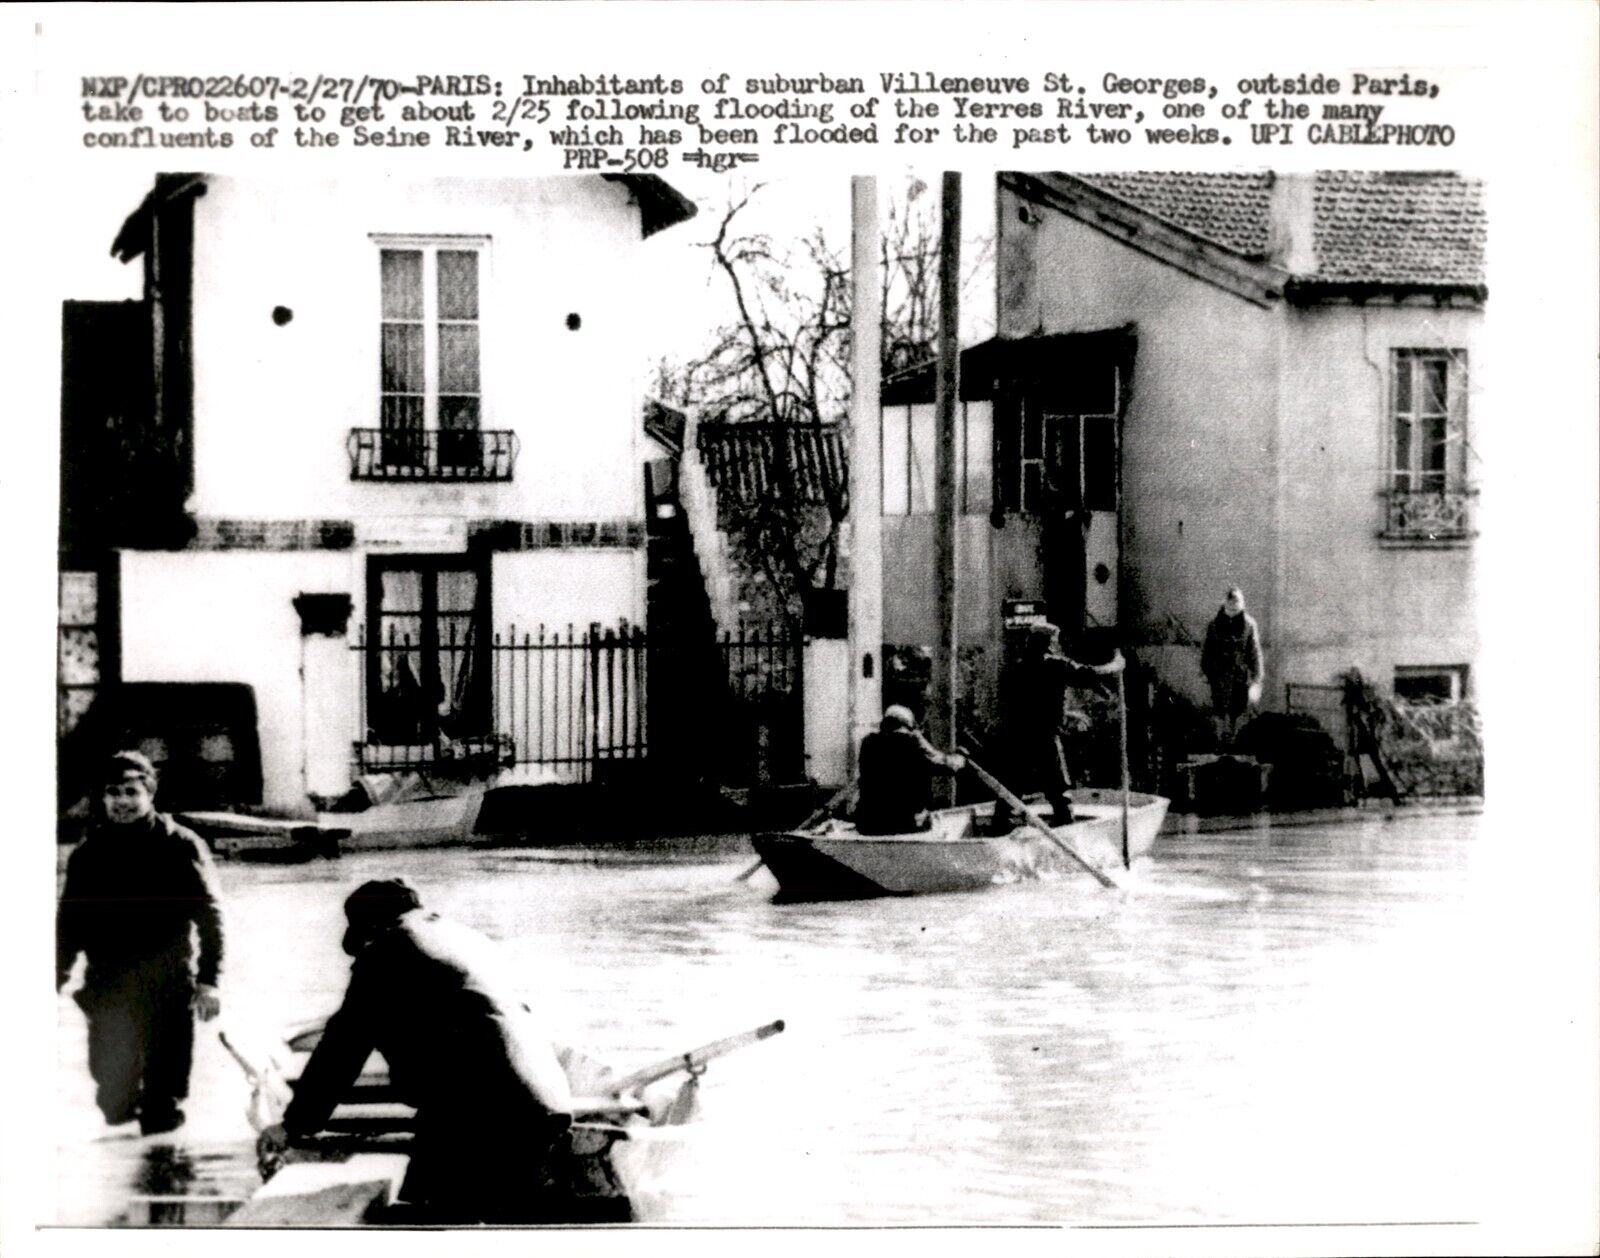 LD272 1970 UPI Wire Photo VILLENEUVE ST GEORGES FLOODING OF YERRES RIVER PARIS